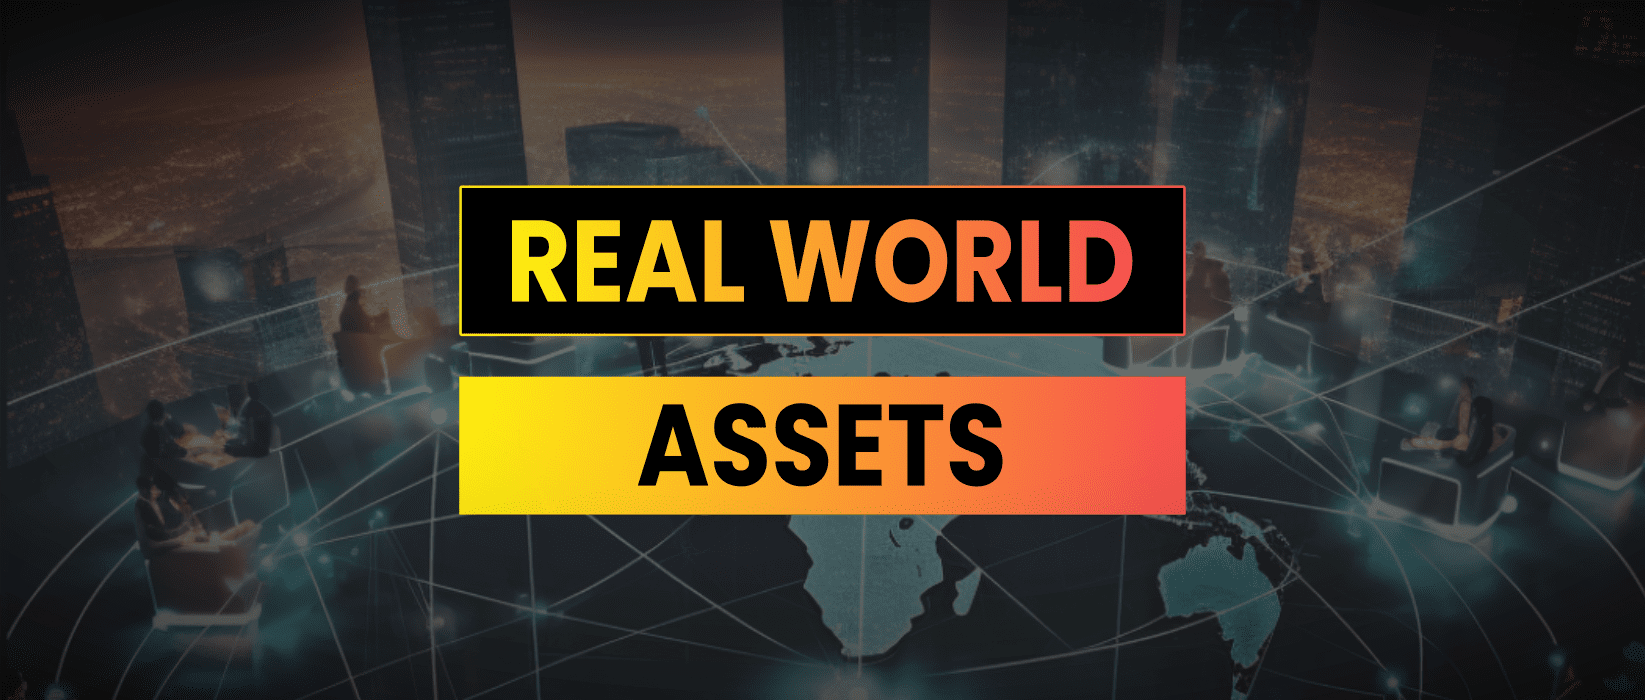 rwa real world assets defi